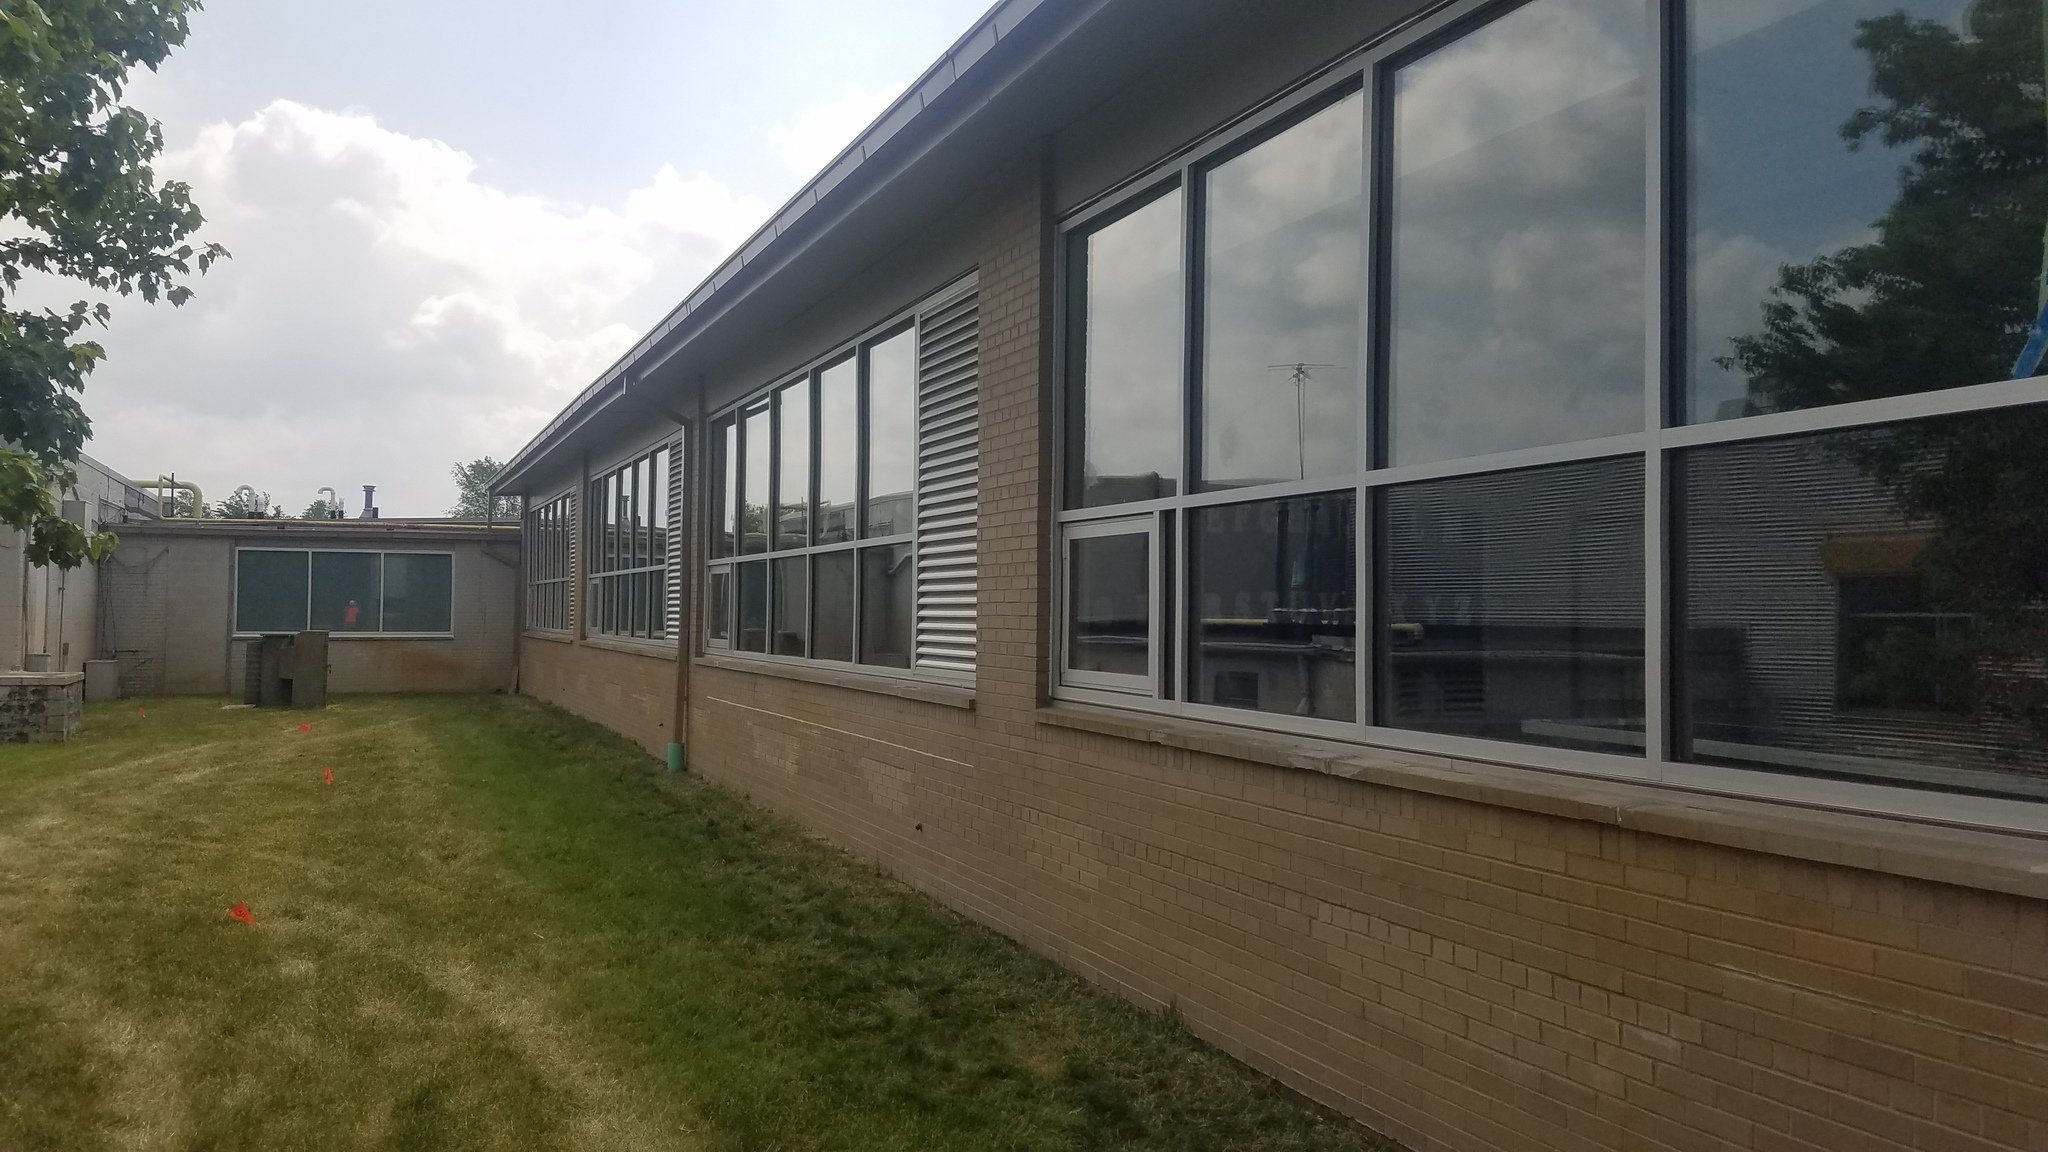 View of new windows at Davisburg Elementary